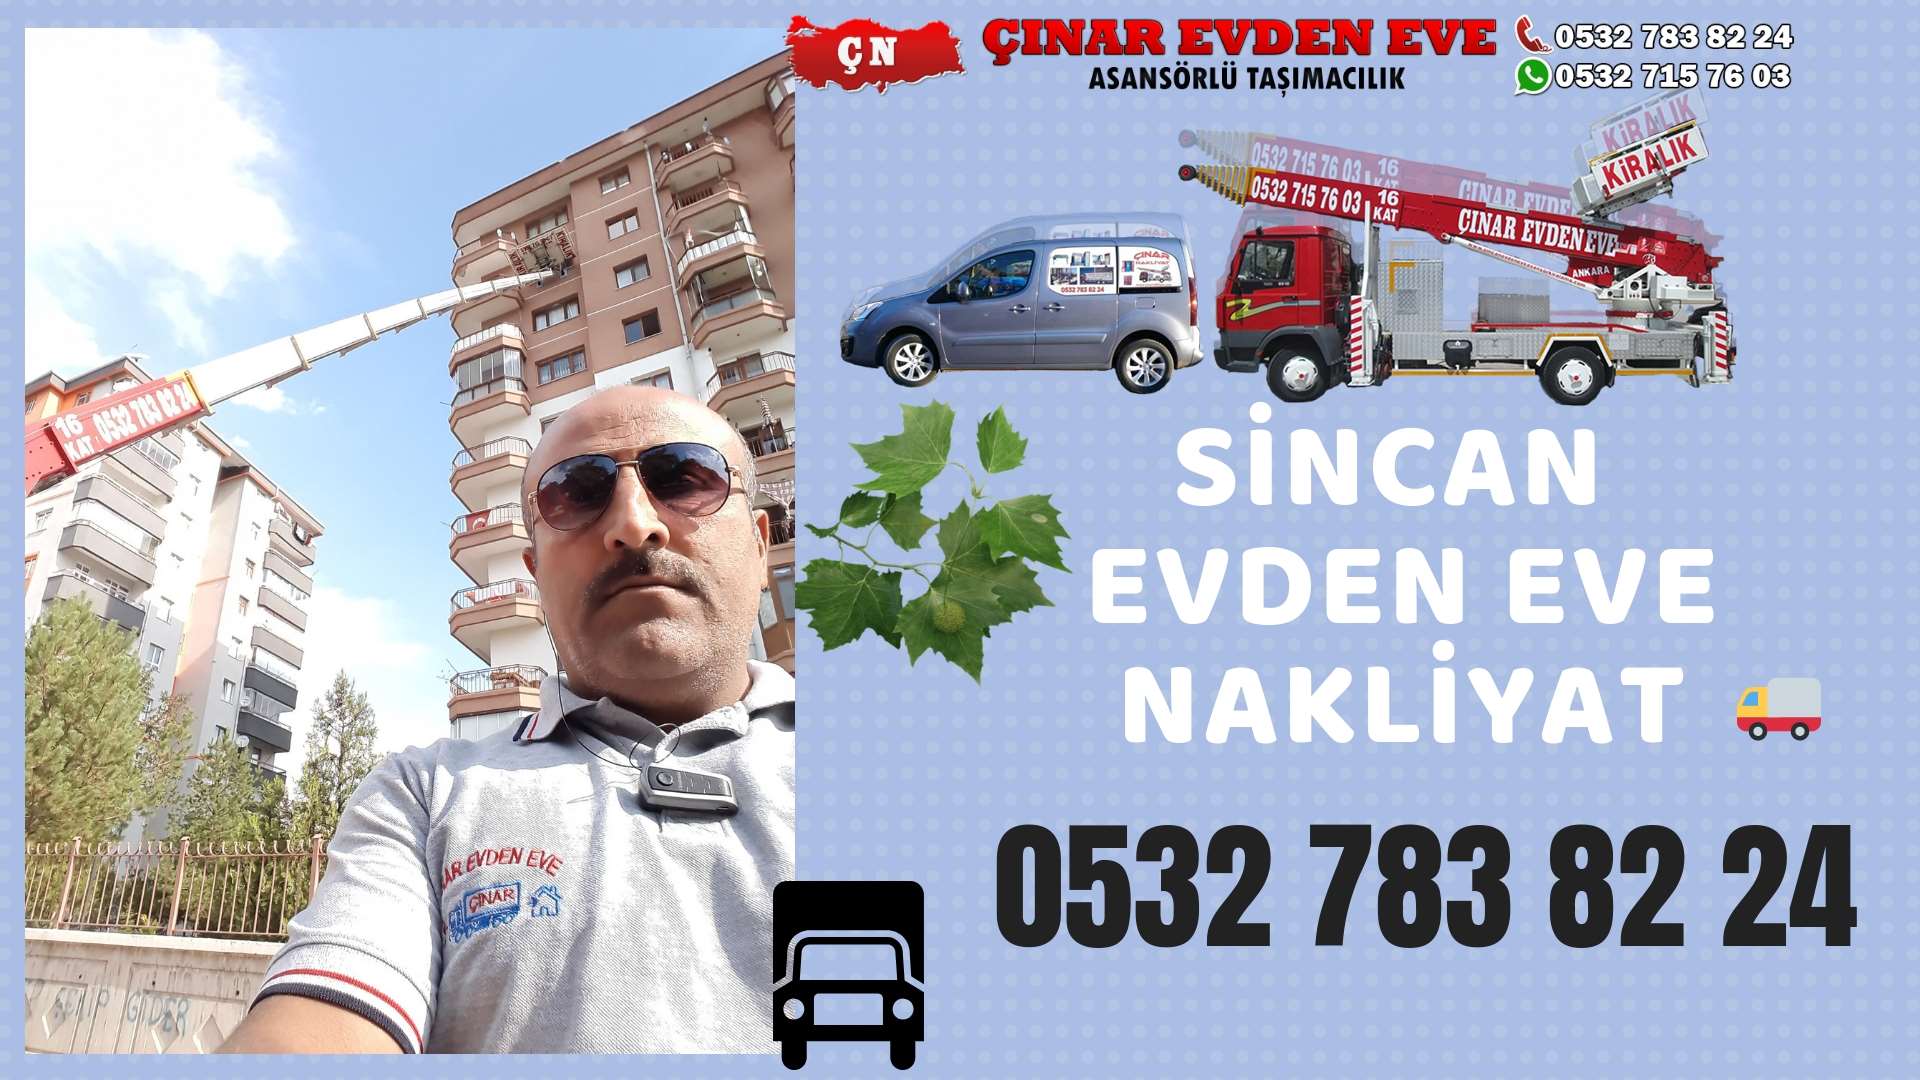 Ankara Nallıhan Evden Eve Nakliyat, Asansörlü Taşımacılık, Ofis / İş Yeri Taşıma 0532 715 76 03